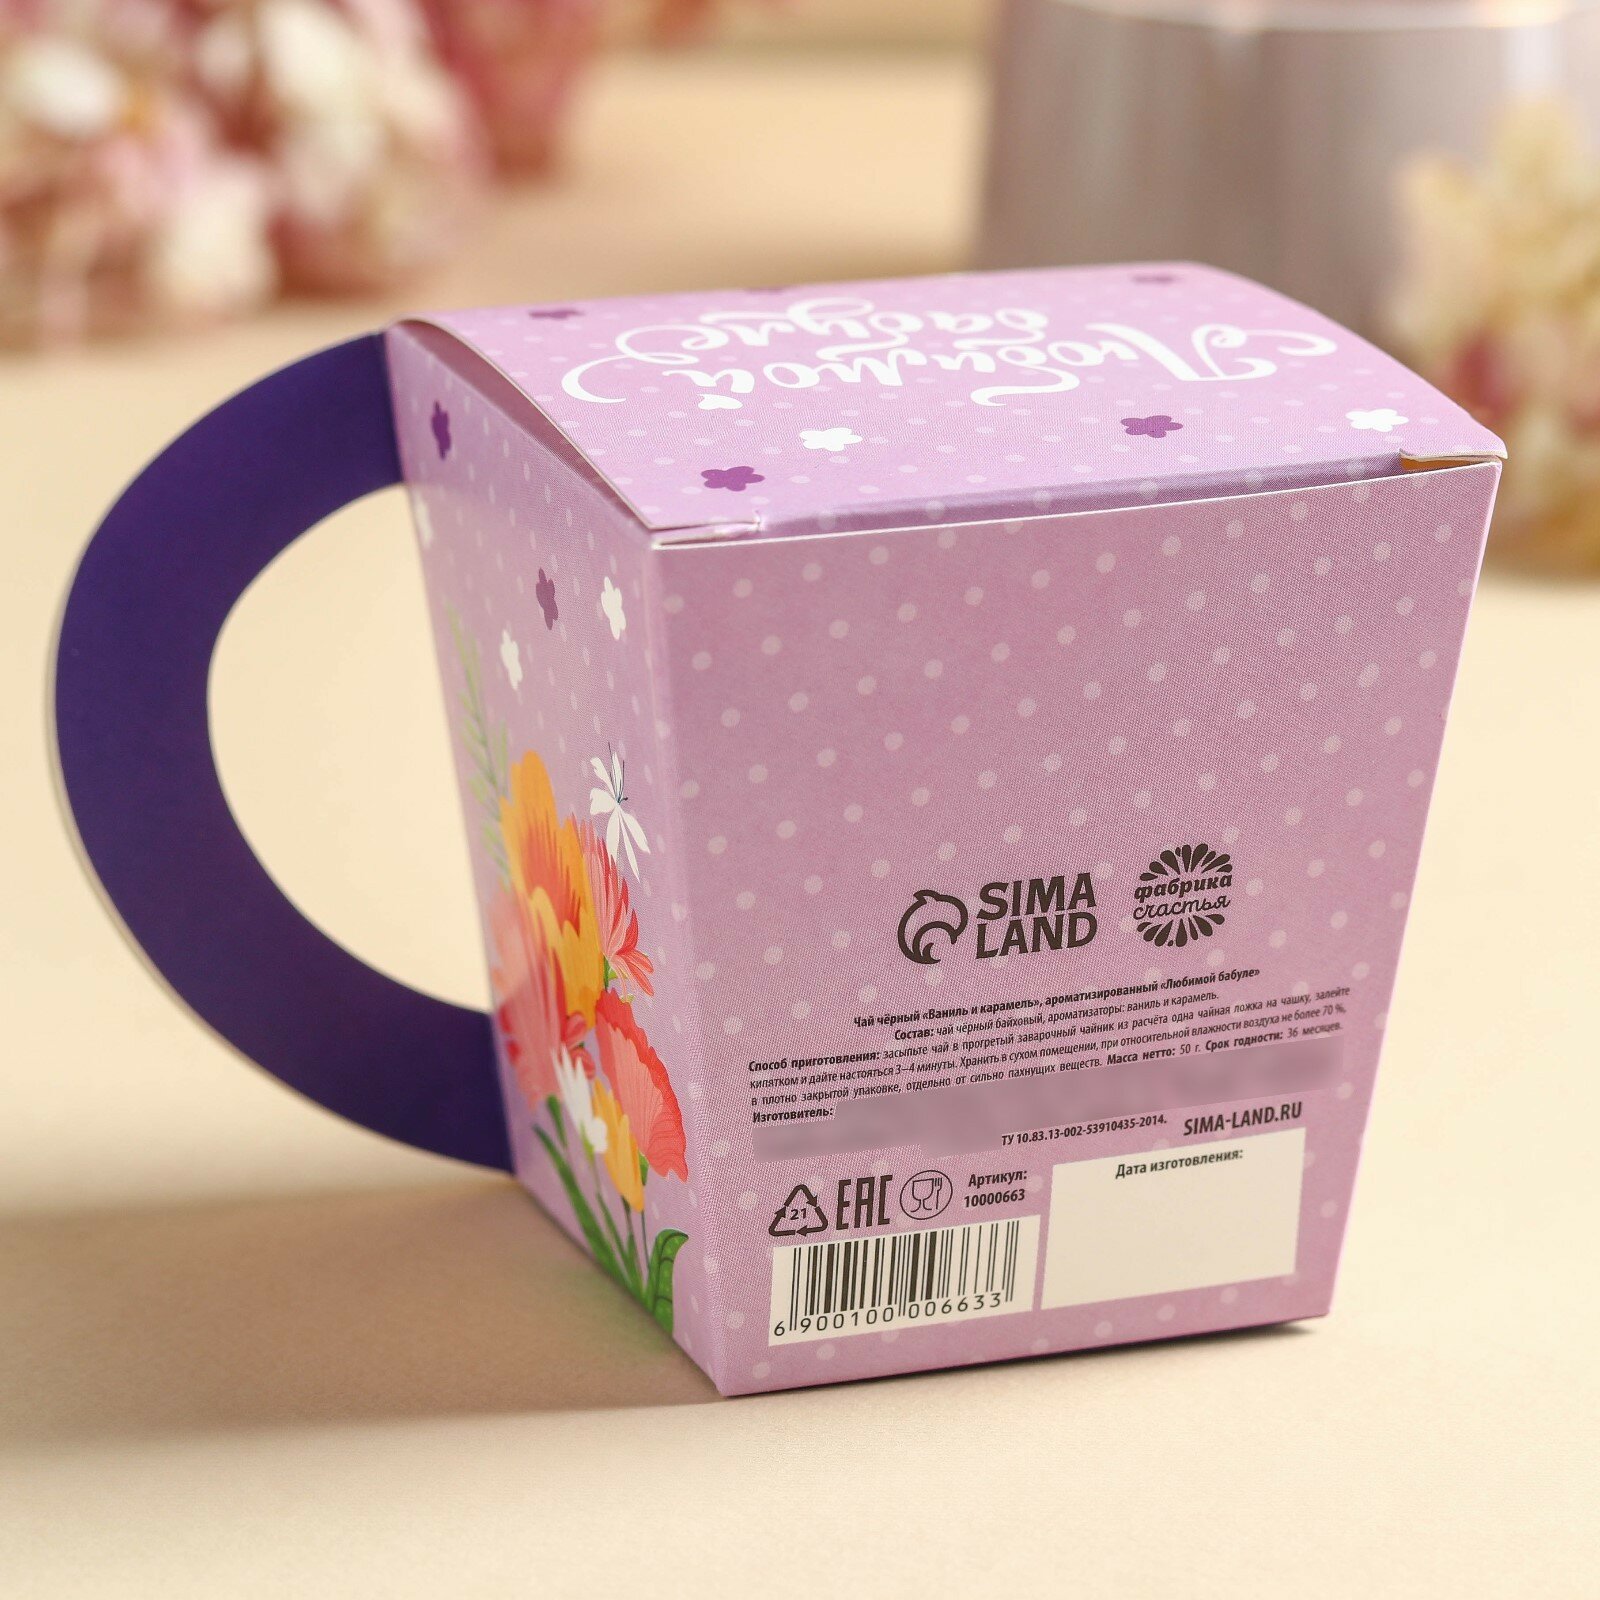 Чай чёрный в коробке-кружке «Любимой бабуле», вкус: ваниль - карамель, 50 г.